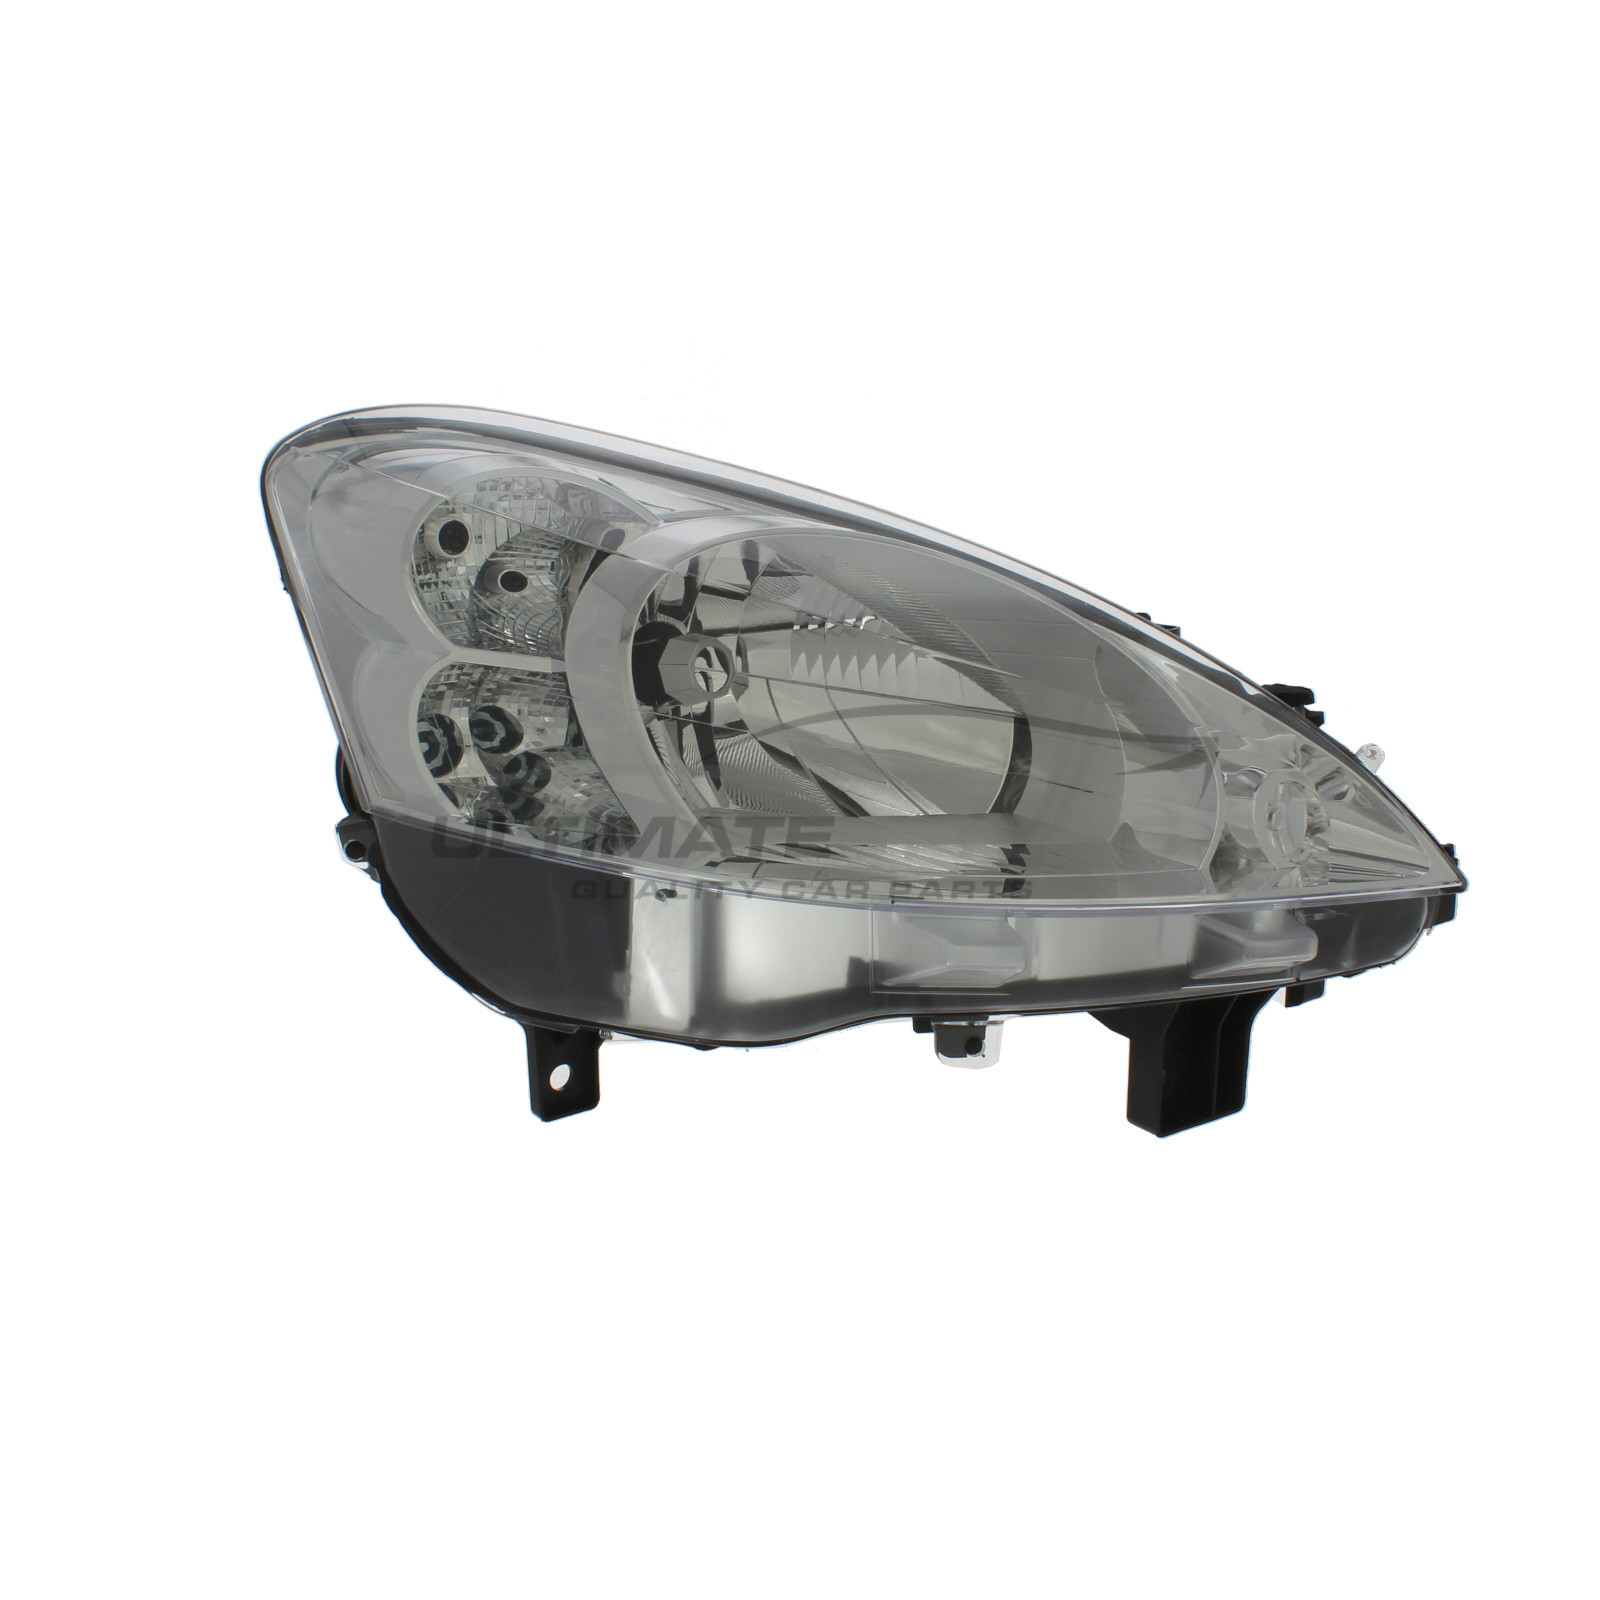 Headlight / Headlamp for Peugeot Partner